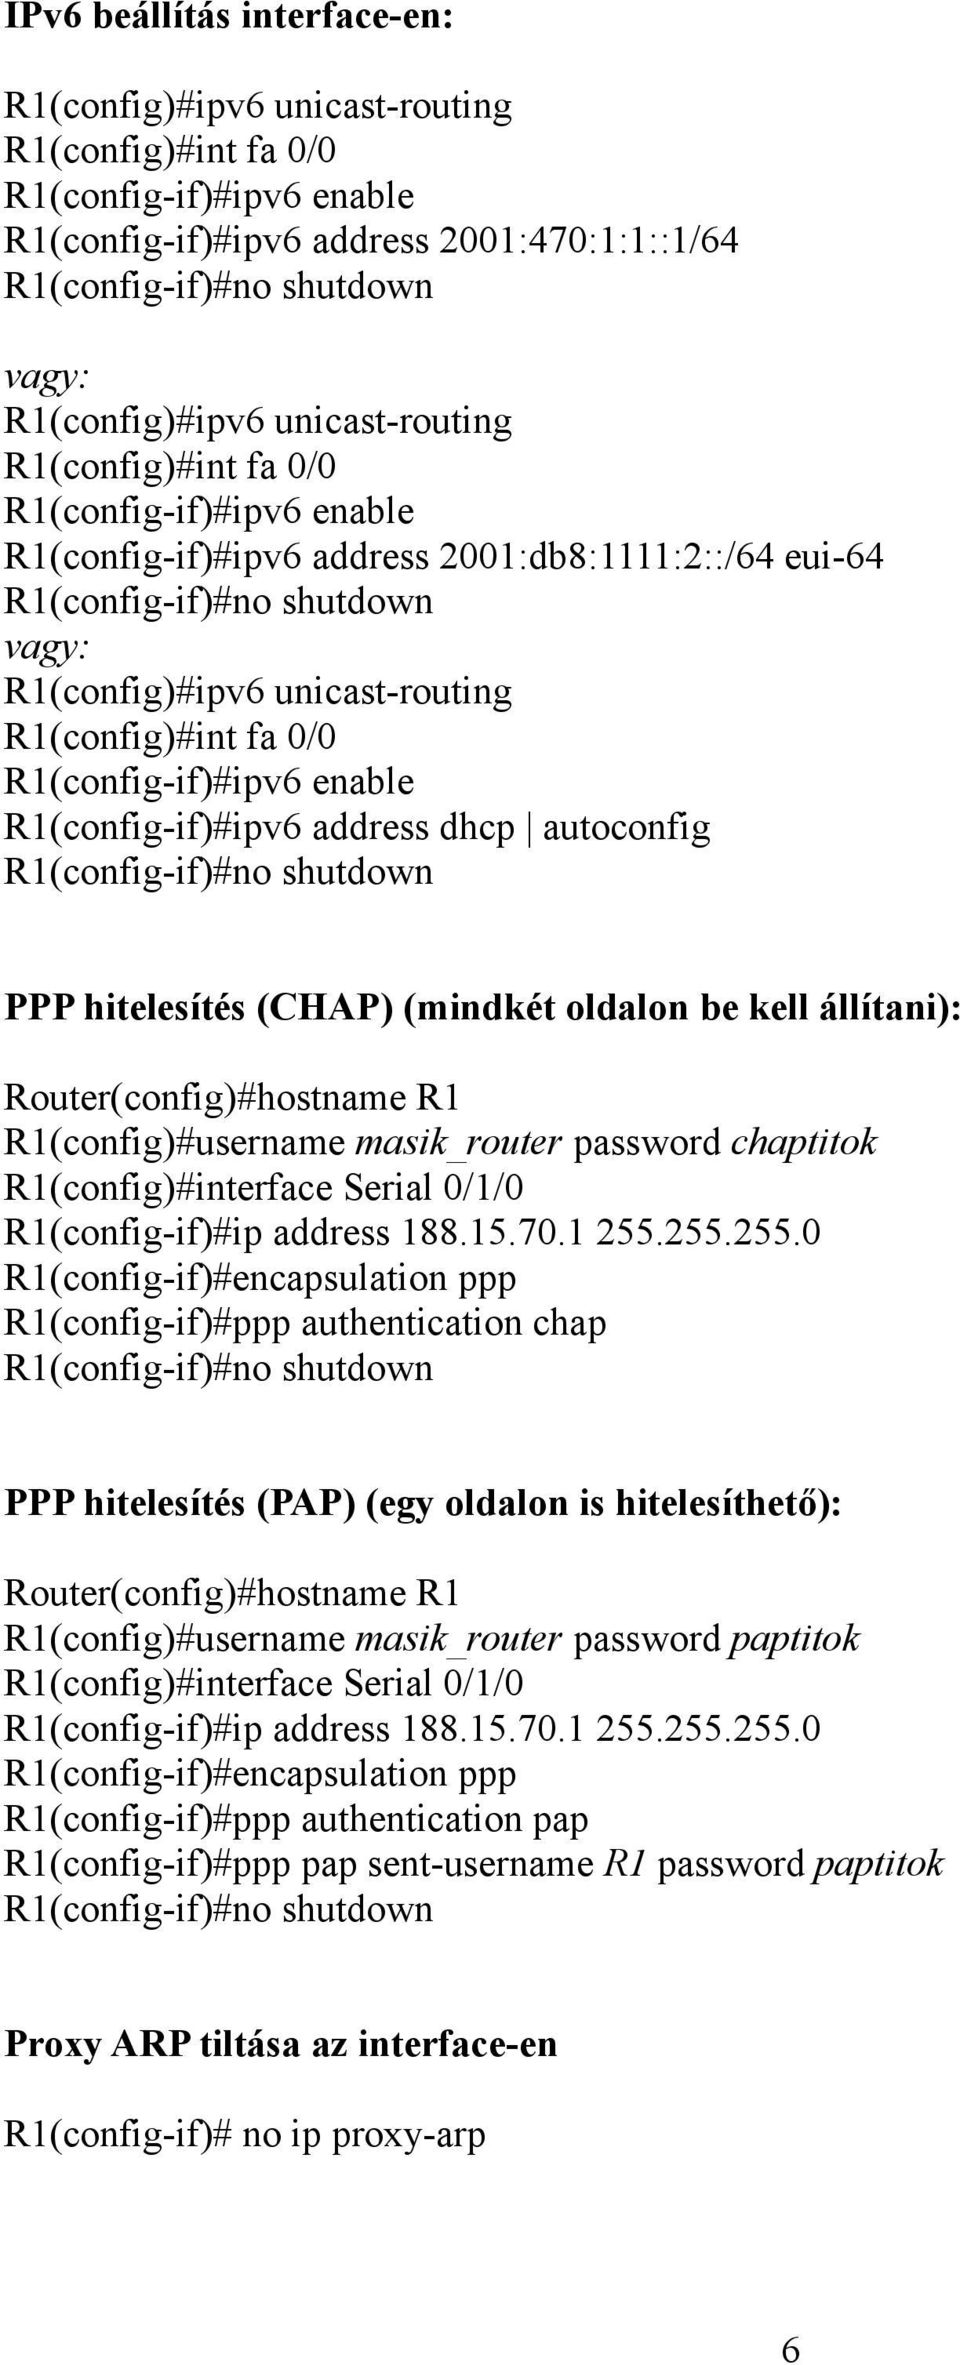 R1(config)#int fa 0/0 R1(config-if)#ipv6 enable R1(config-if)#ipv6 address dhcp autoconfig R1(config-if)#no shutdown PPP hitelesítés (CHAP) (mindkét oldalon be kell állítani): Router(config)#hostname